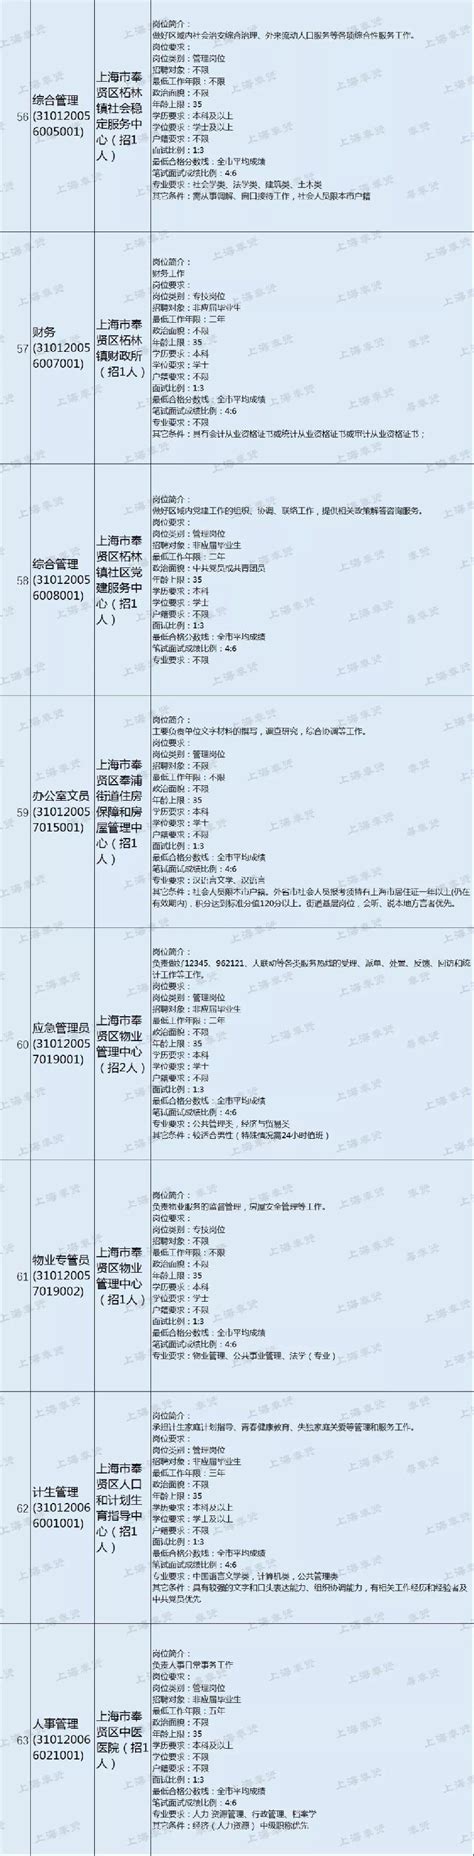 2018上海奉贤事业单位招聘简章发布 3月12日起报名- 上海本地宝